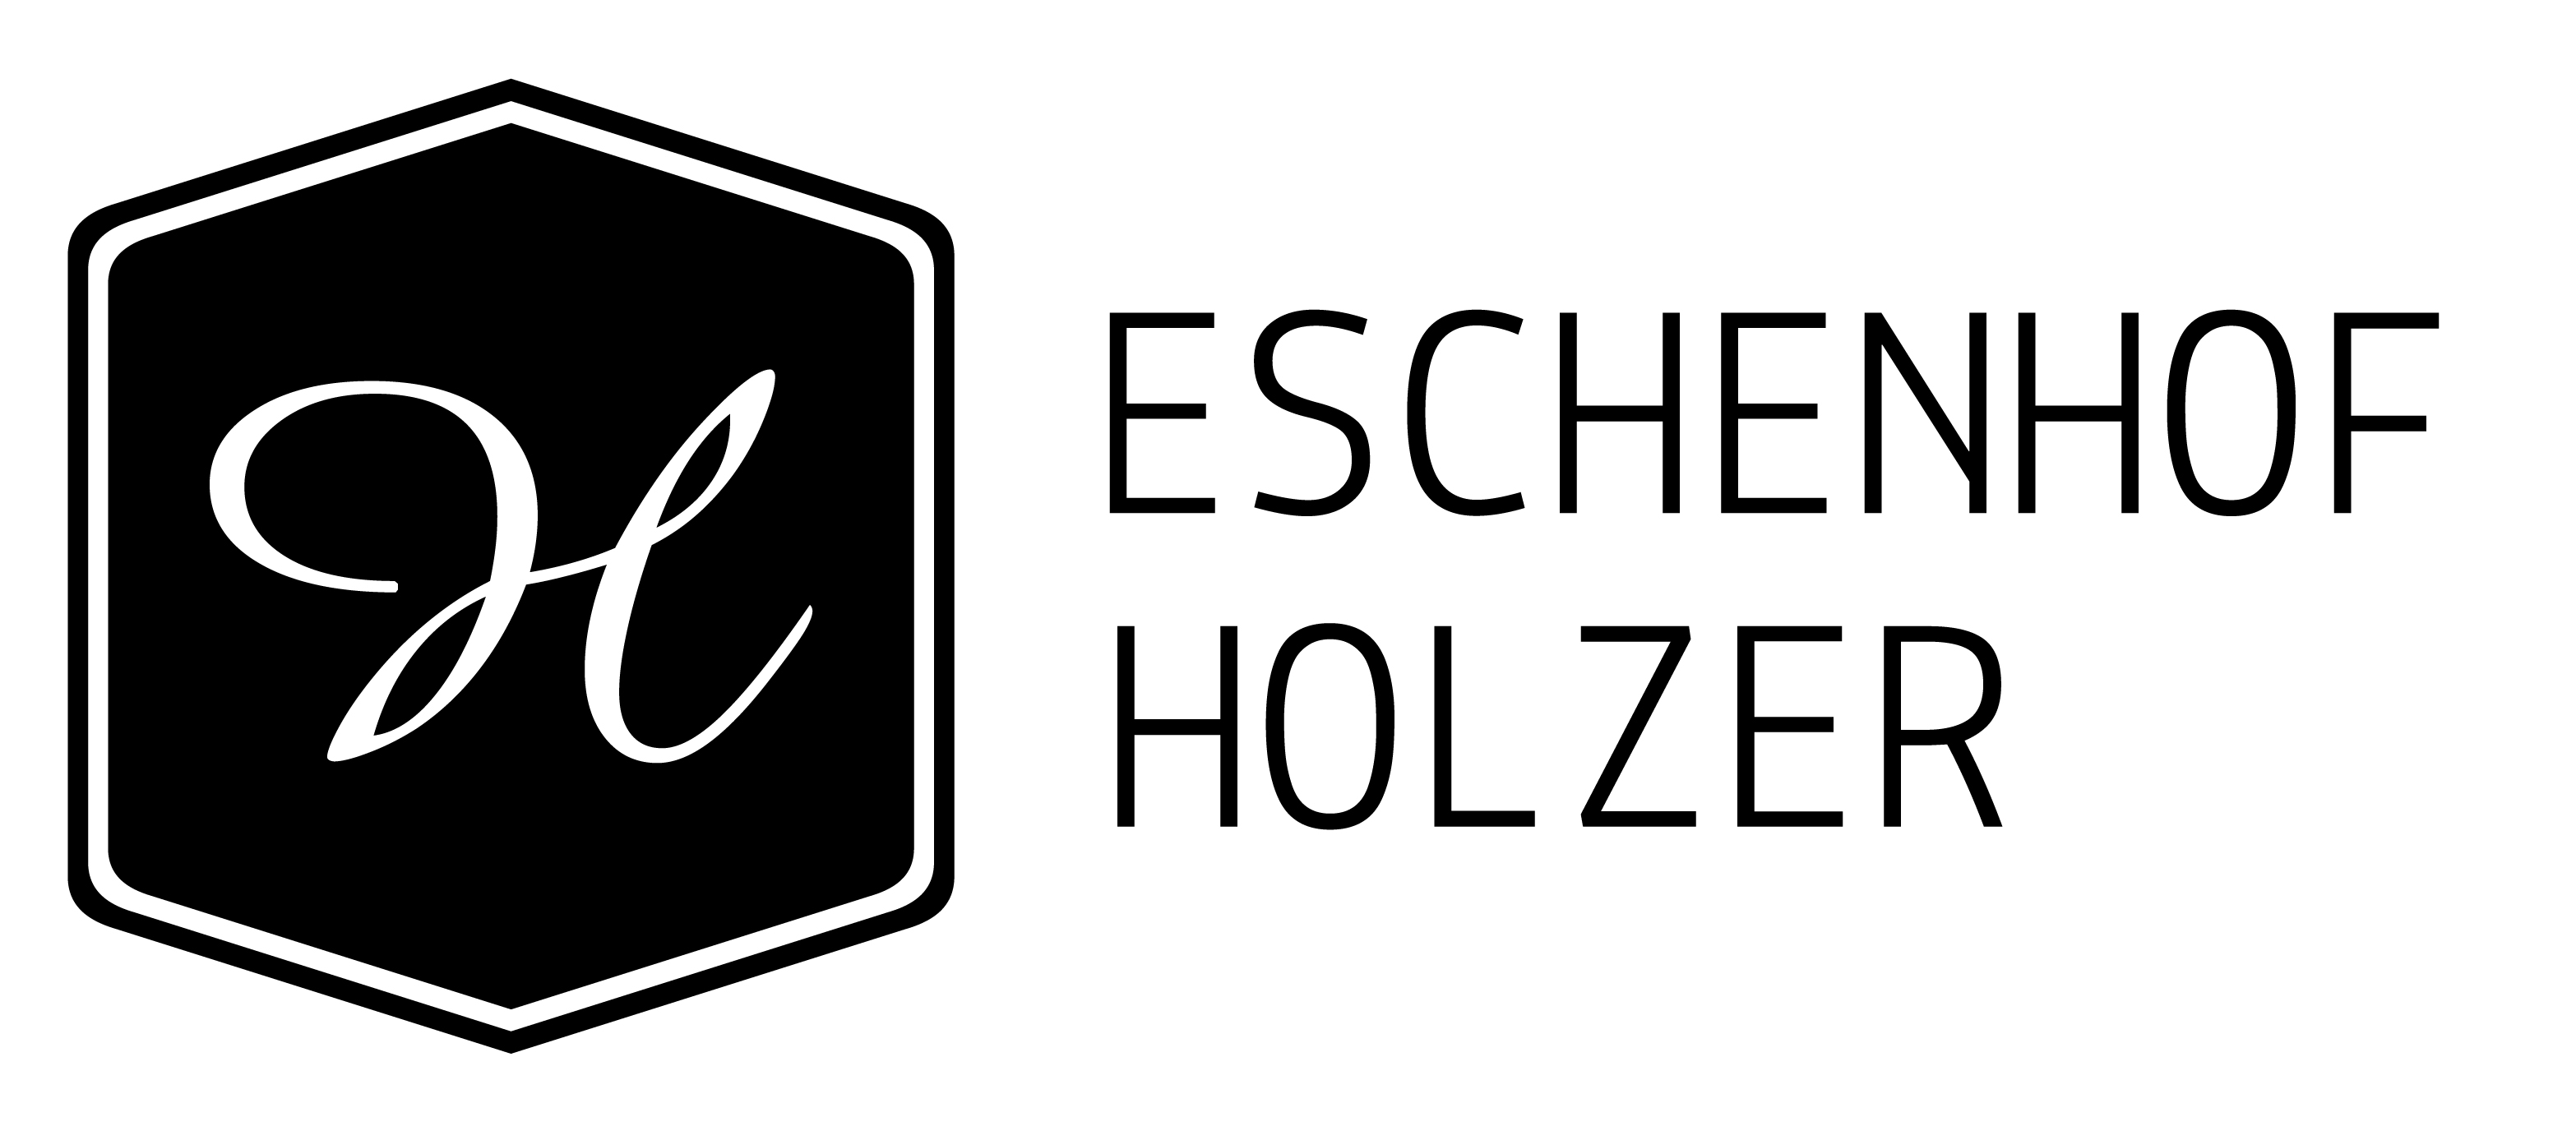 Eschenhof Arnold Holzer